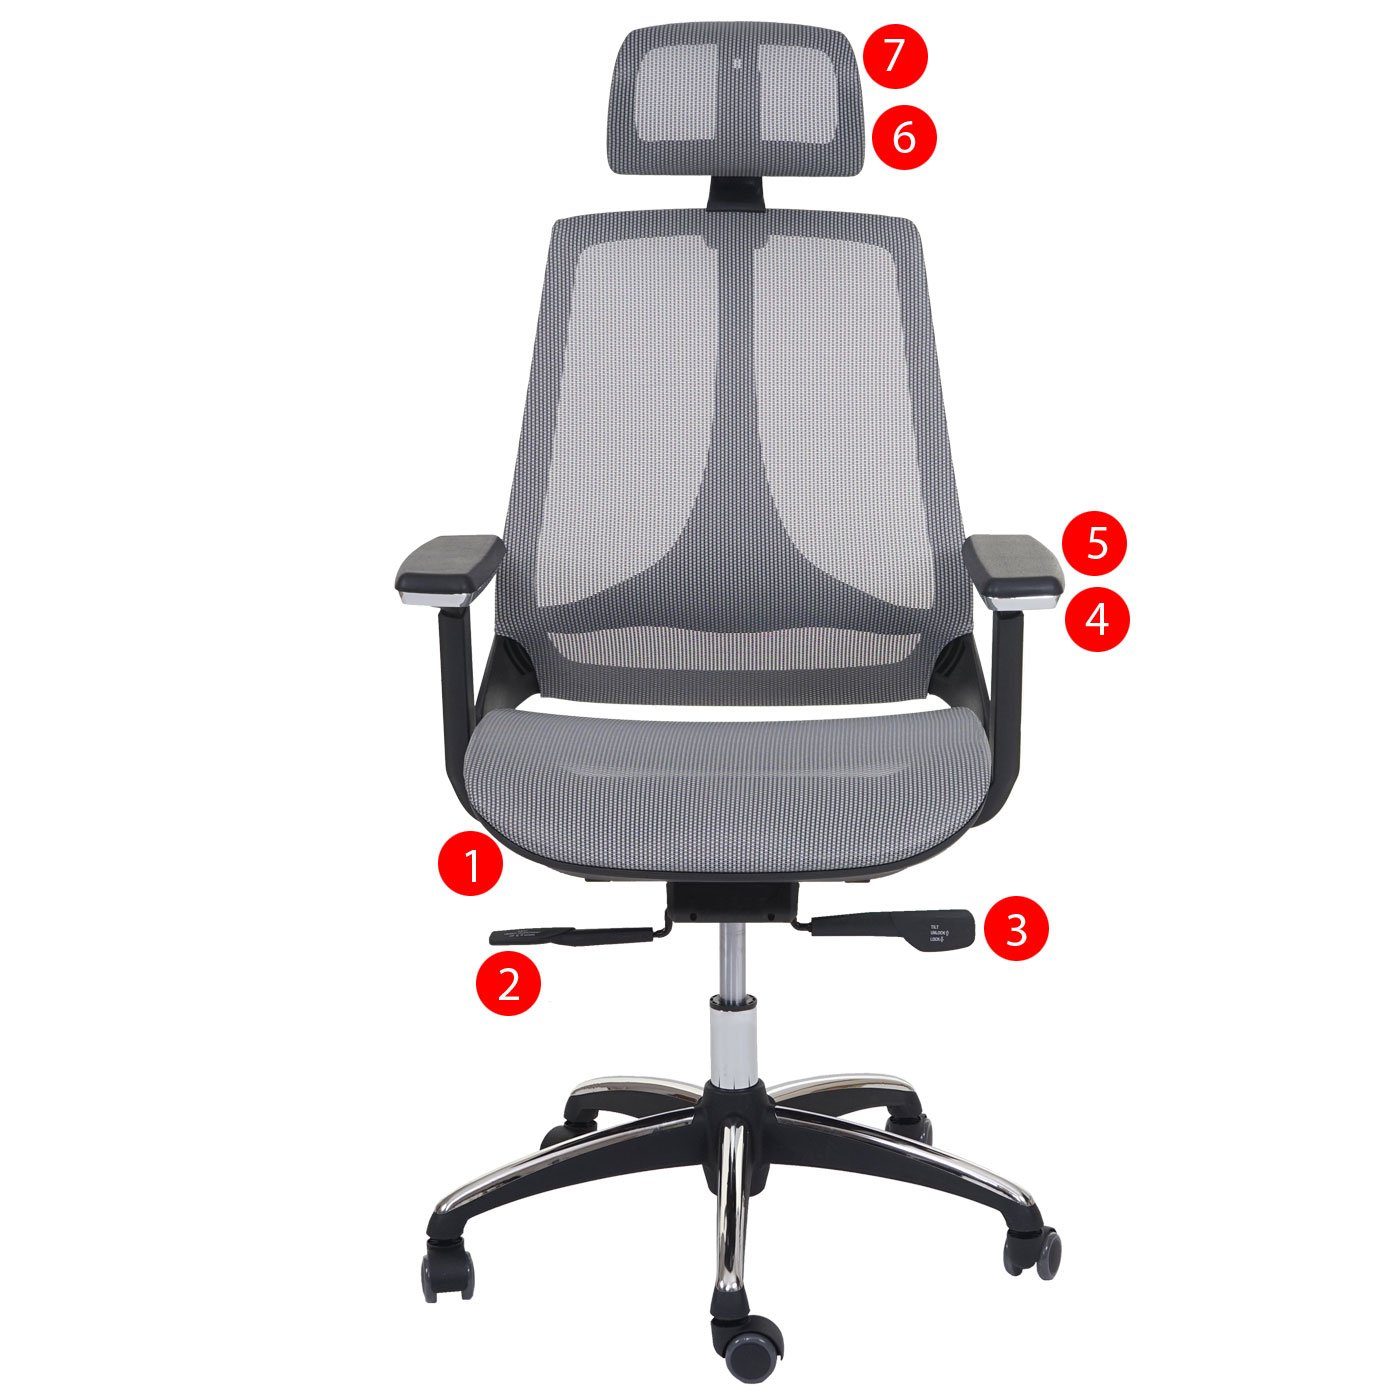 MCW-A59, Kopfstütze, MCW Höhenverstellbare tiefenverstellbare Sitzfläche Schreibtischstuhl grau